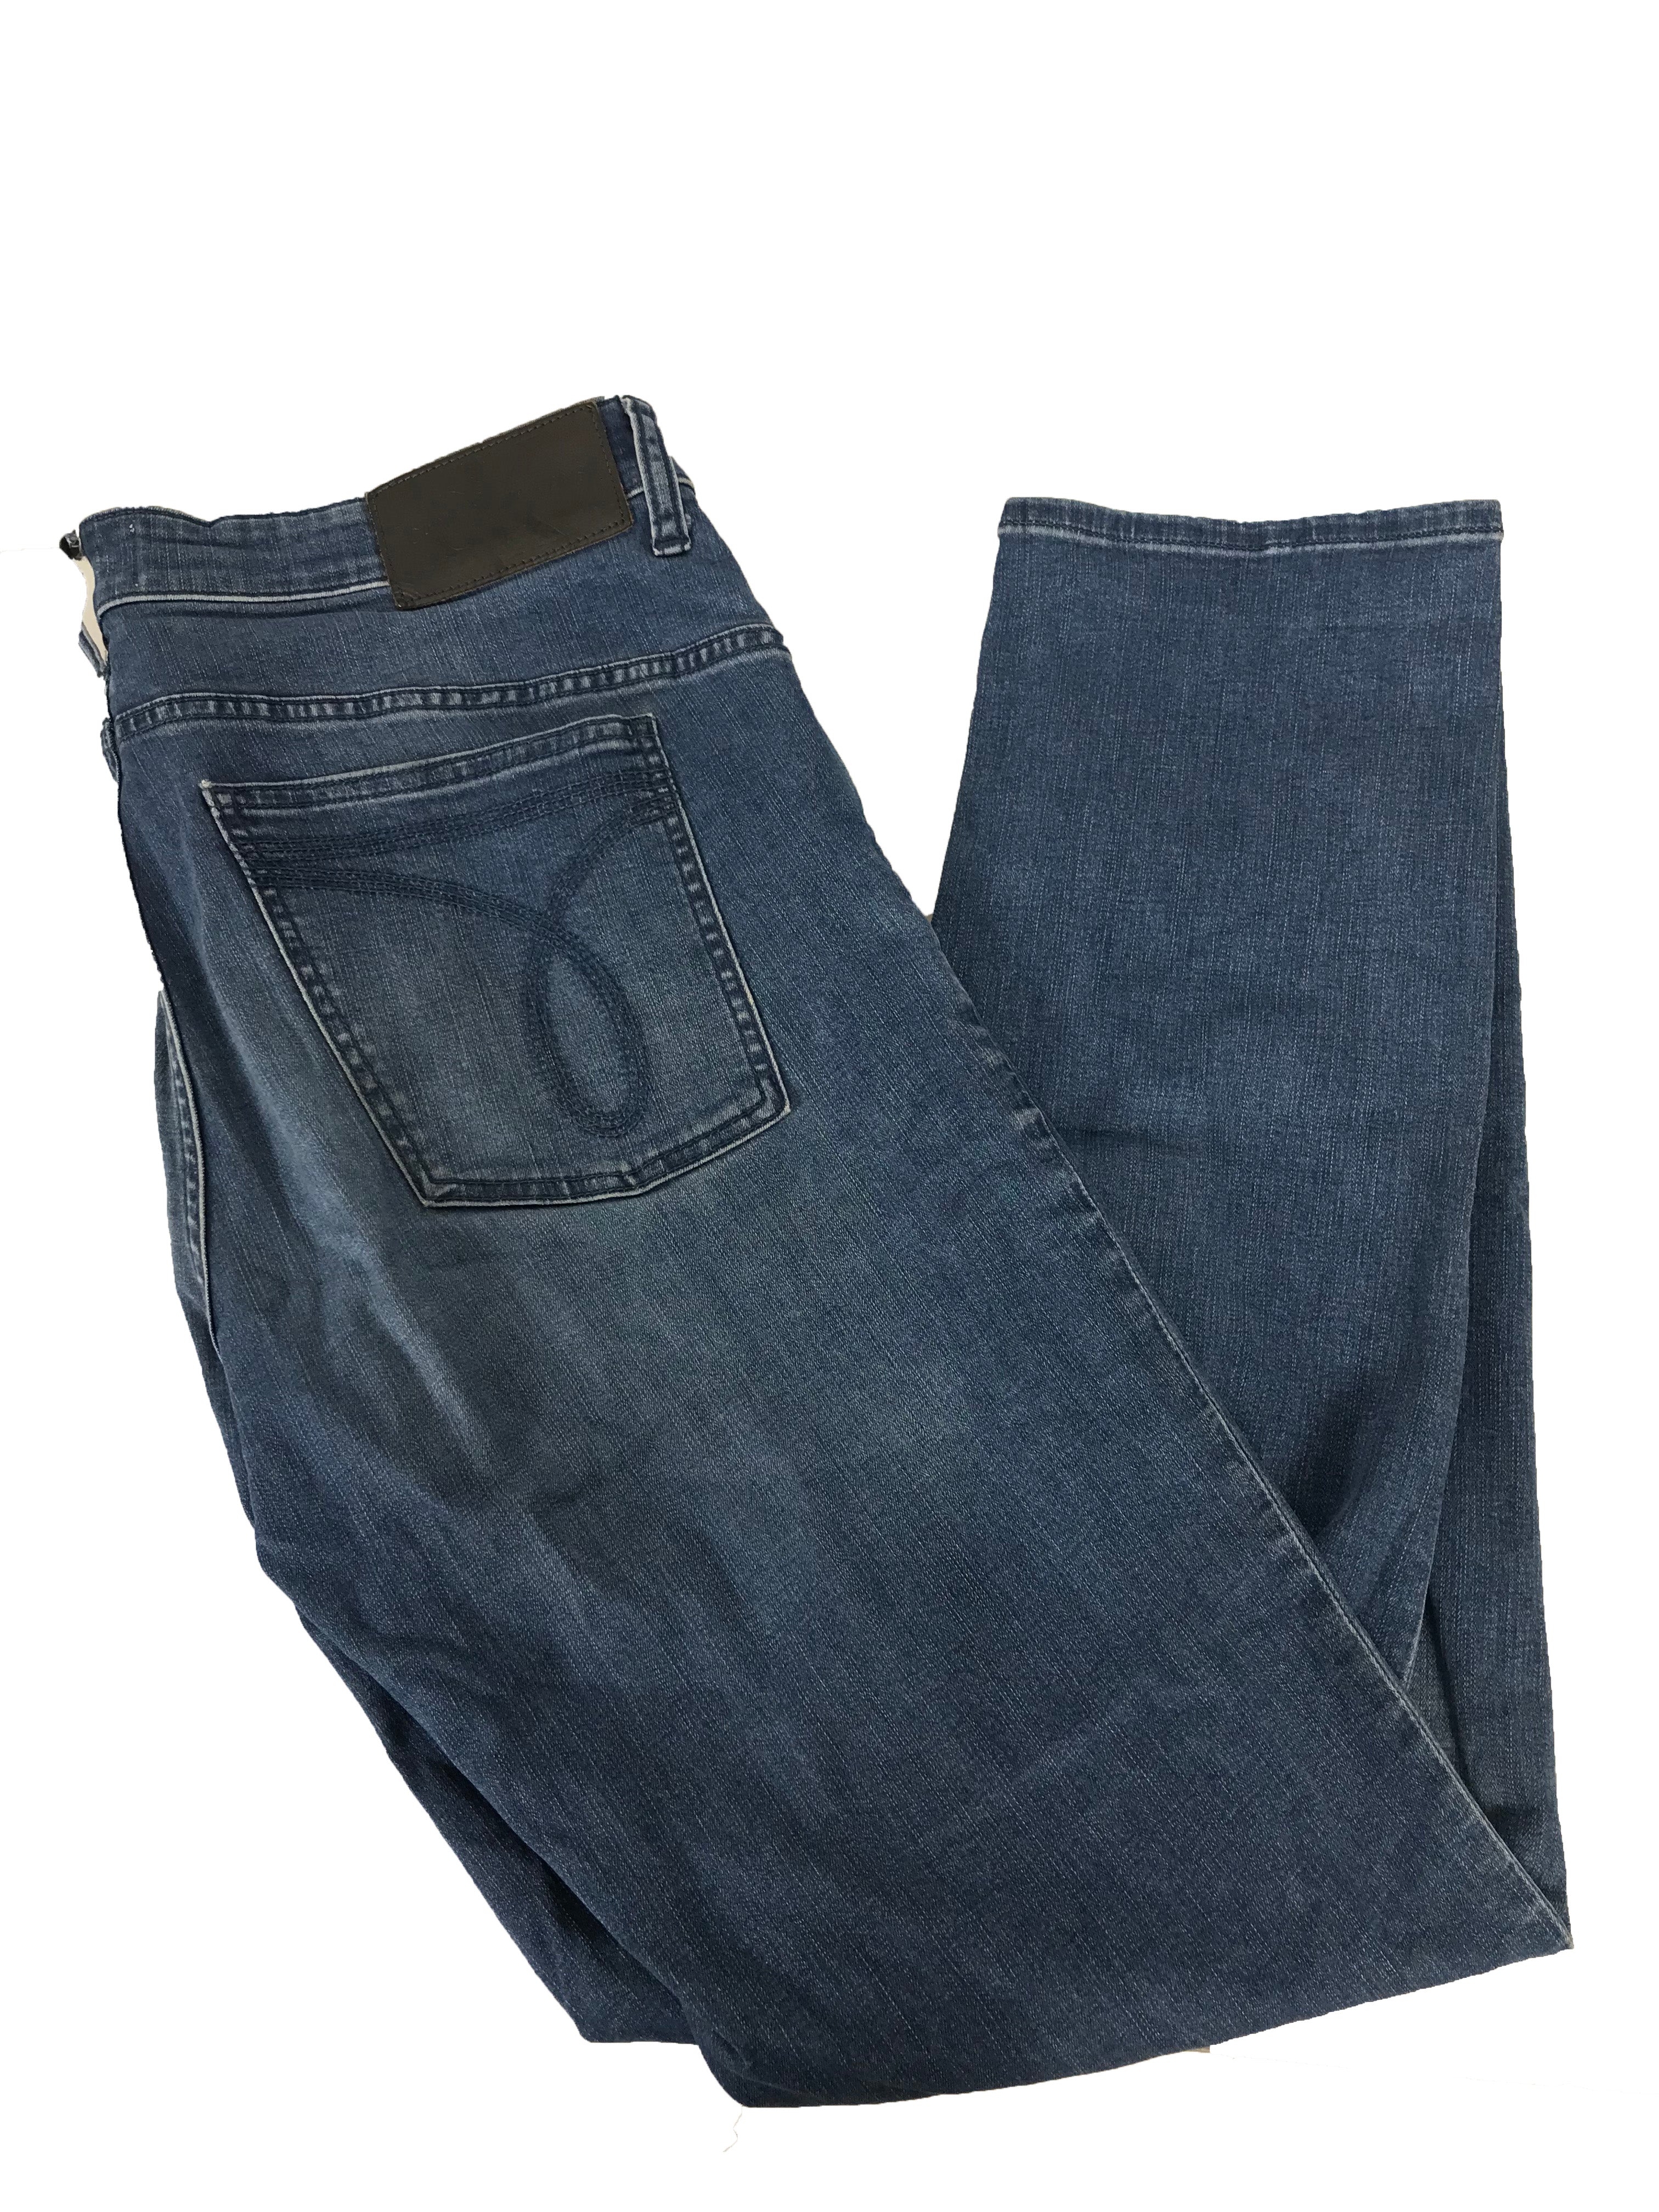 Calvin Klein Blue Jeans Men's Size 34x32